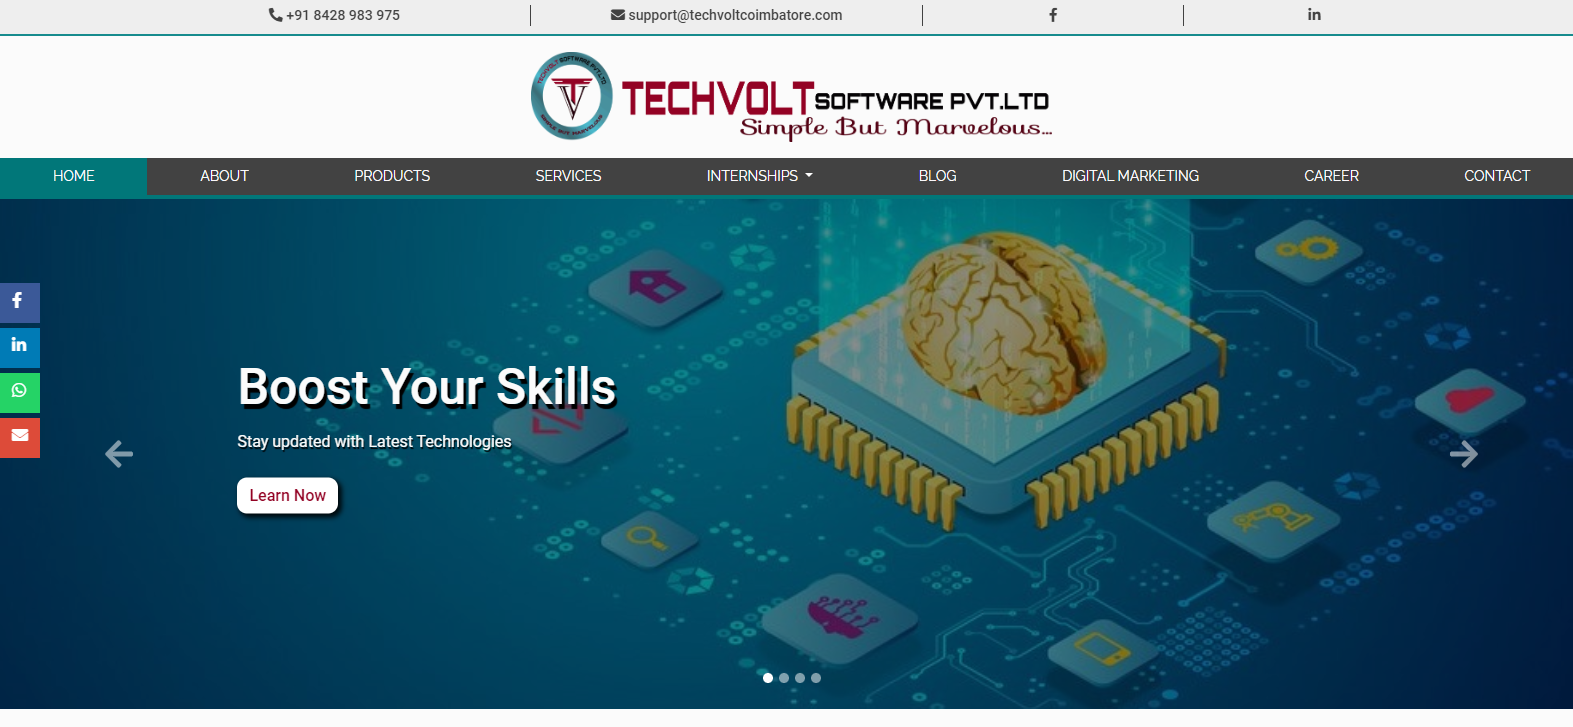 Techvolt Software